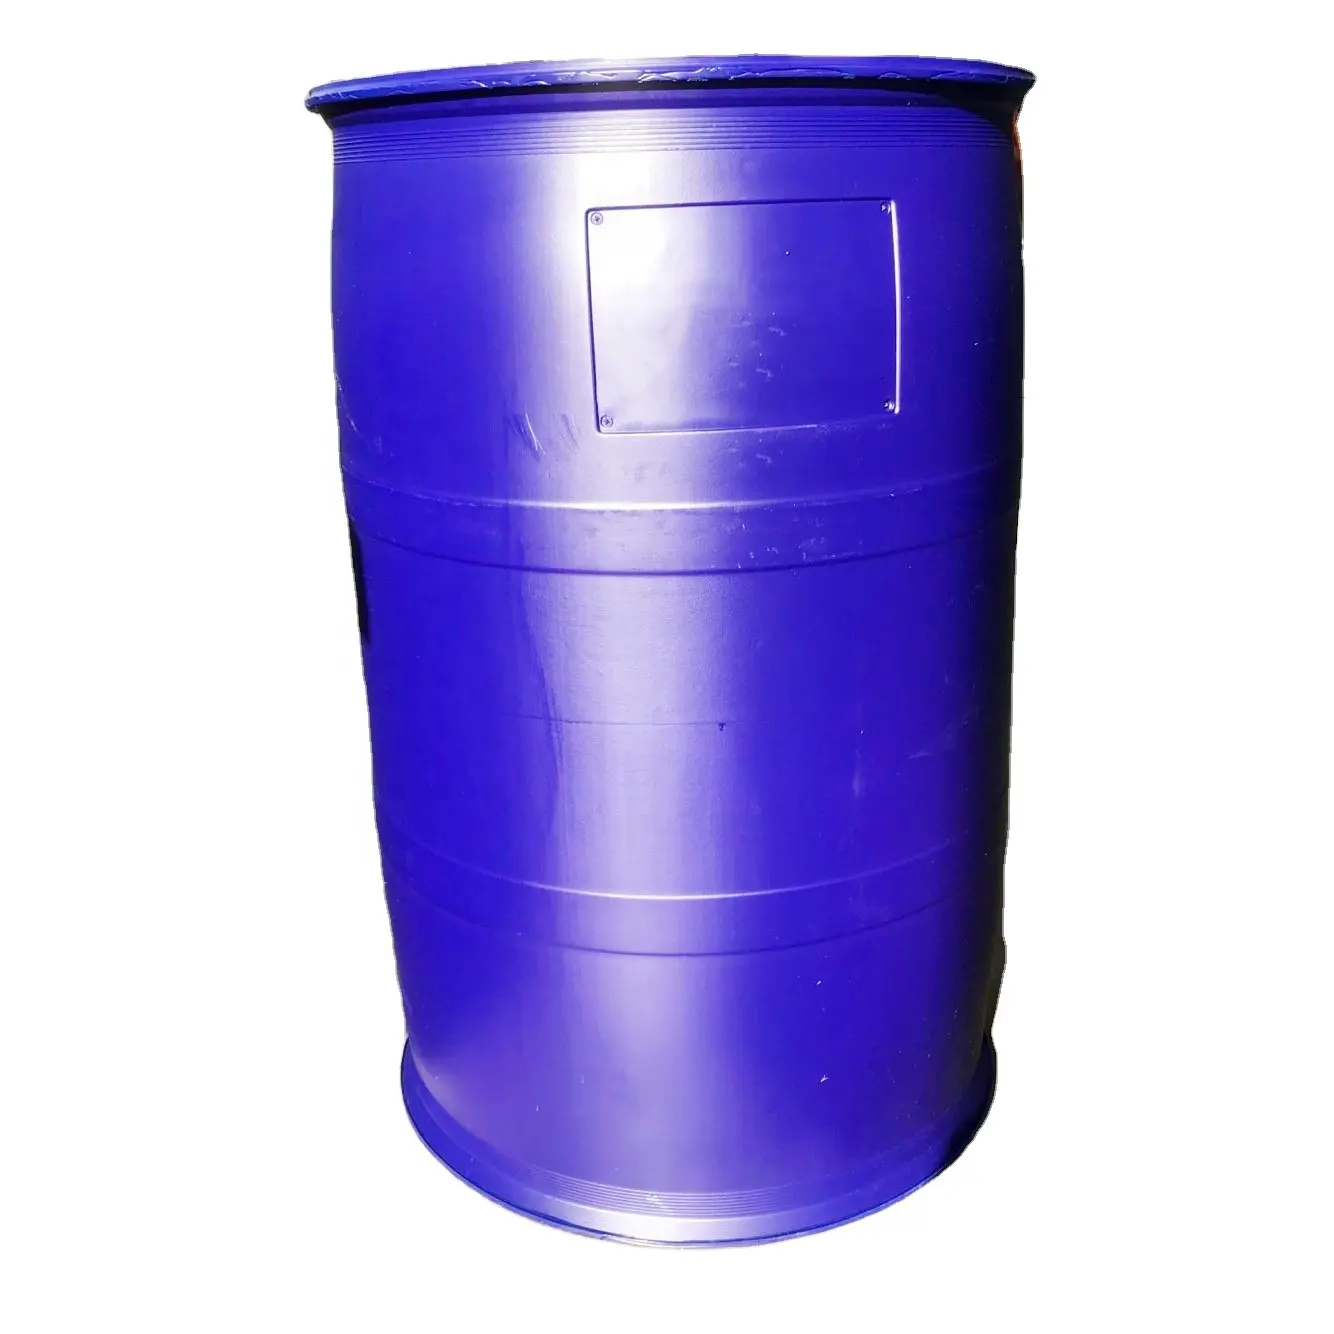 Заводская цена, голубой пластиковый барабан объемом 55 галлонов объемом 200 литра, бочка для доставки с закрытой крышкой